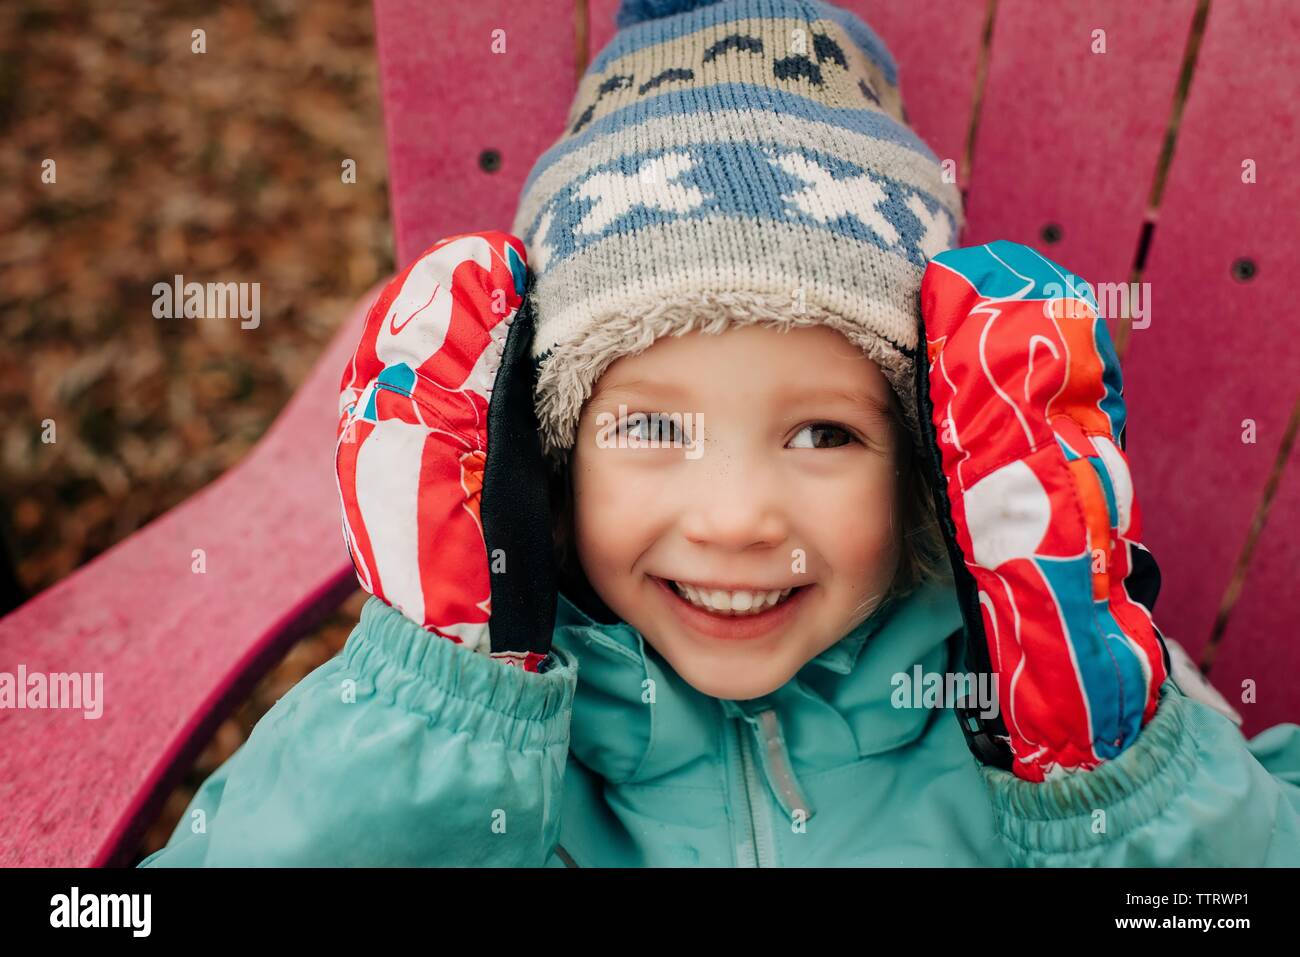 Portrait de jeune fille de 4 smiling avec chapeau, gants et enduire Banque D'Images